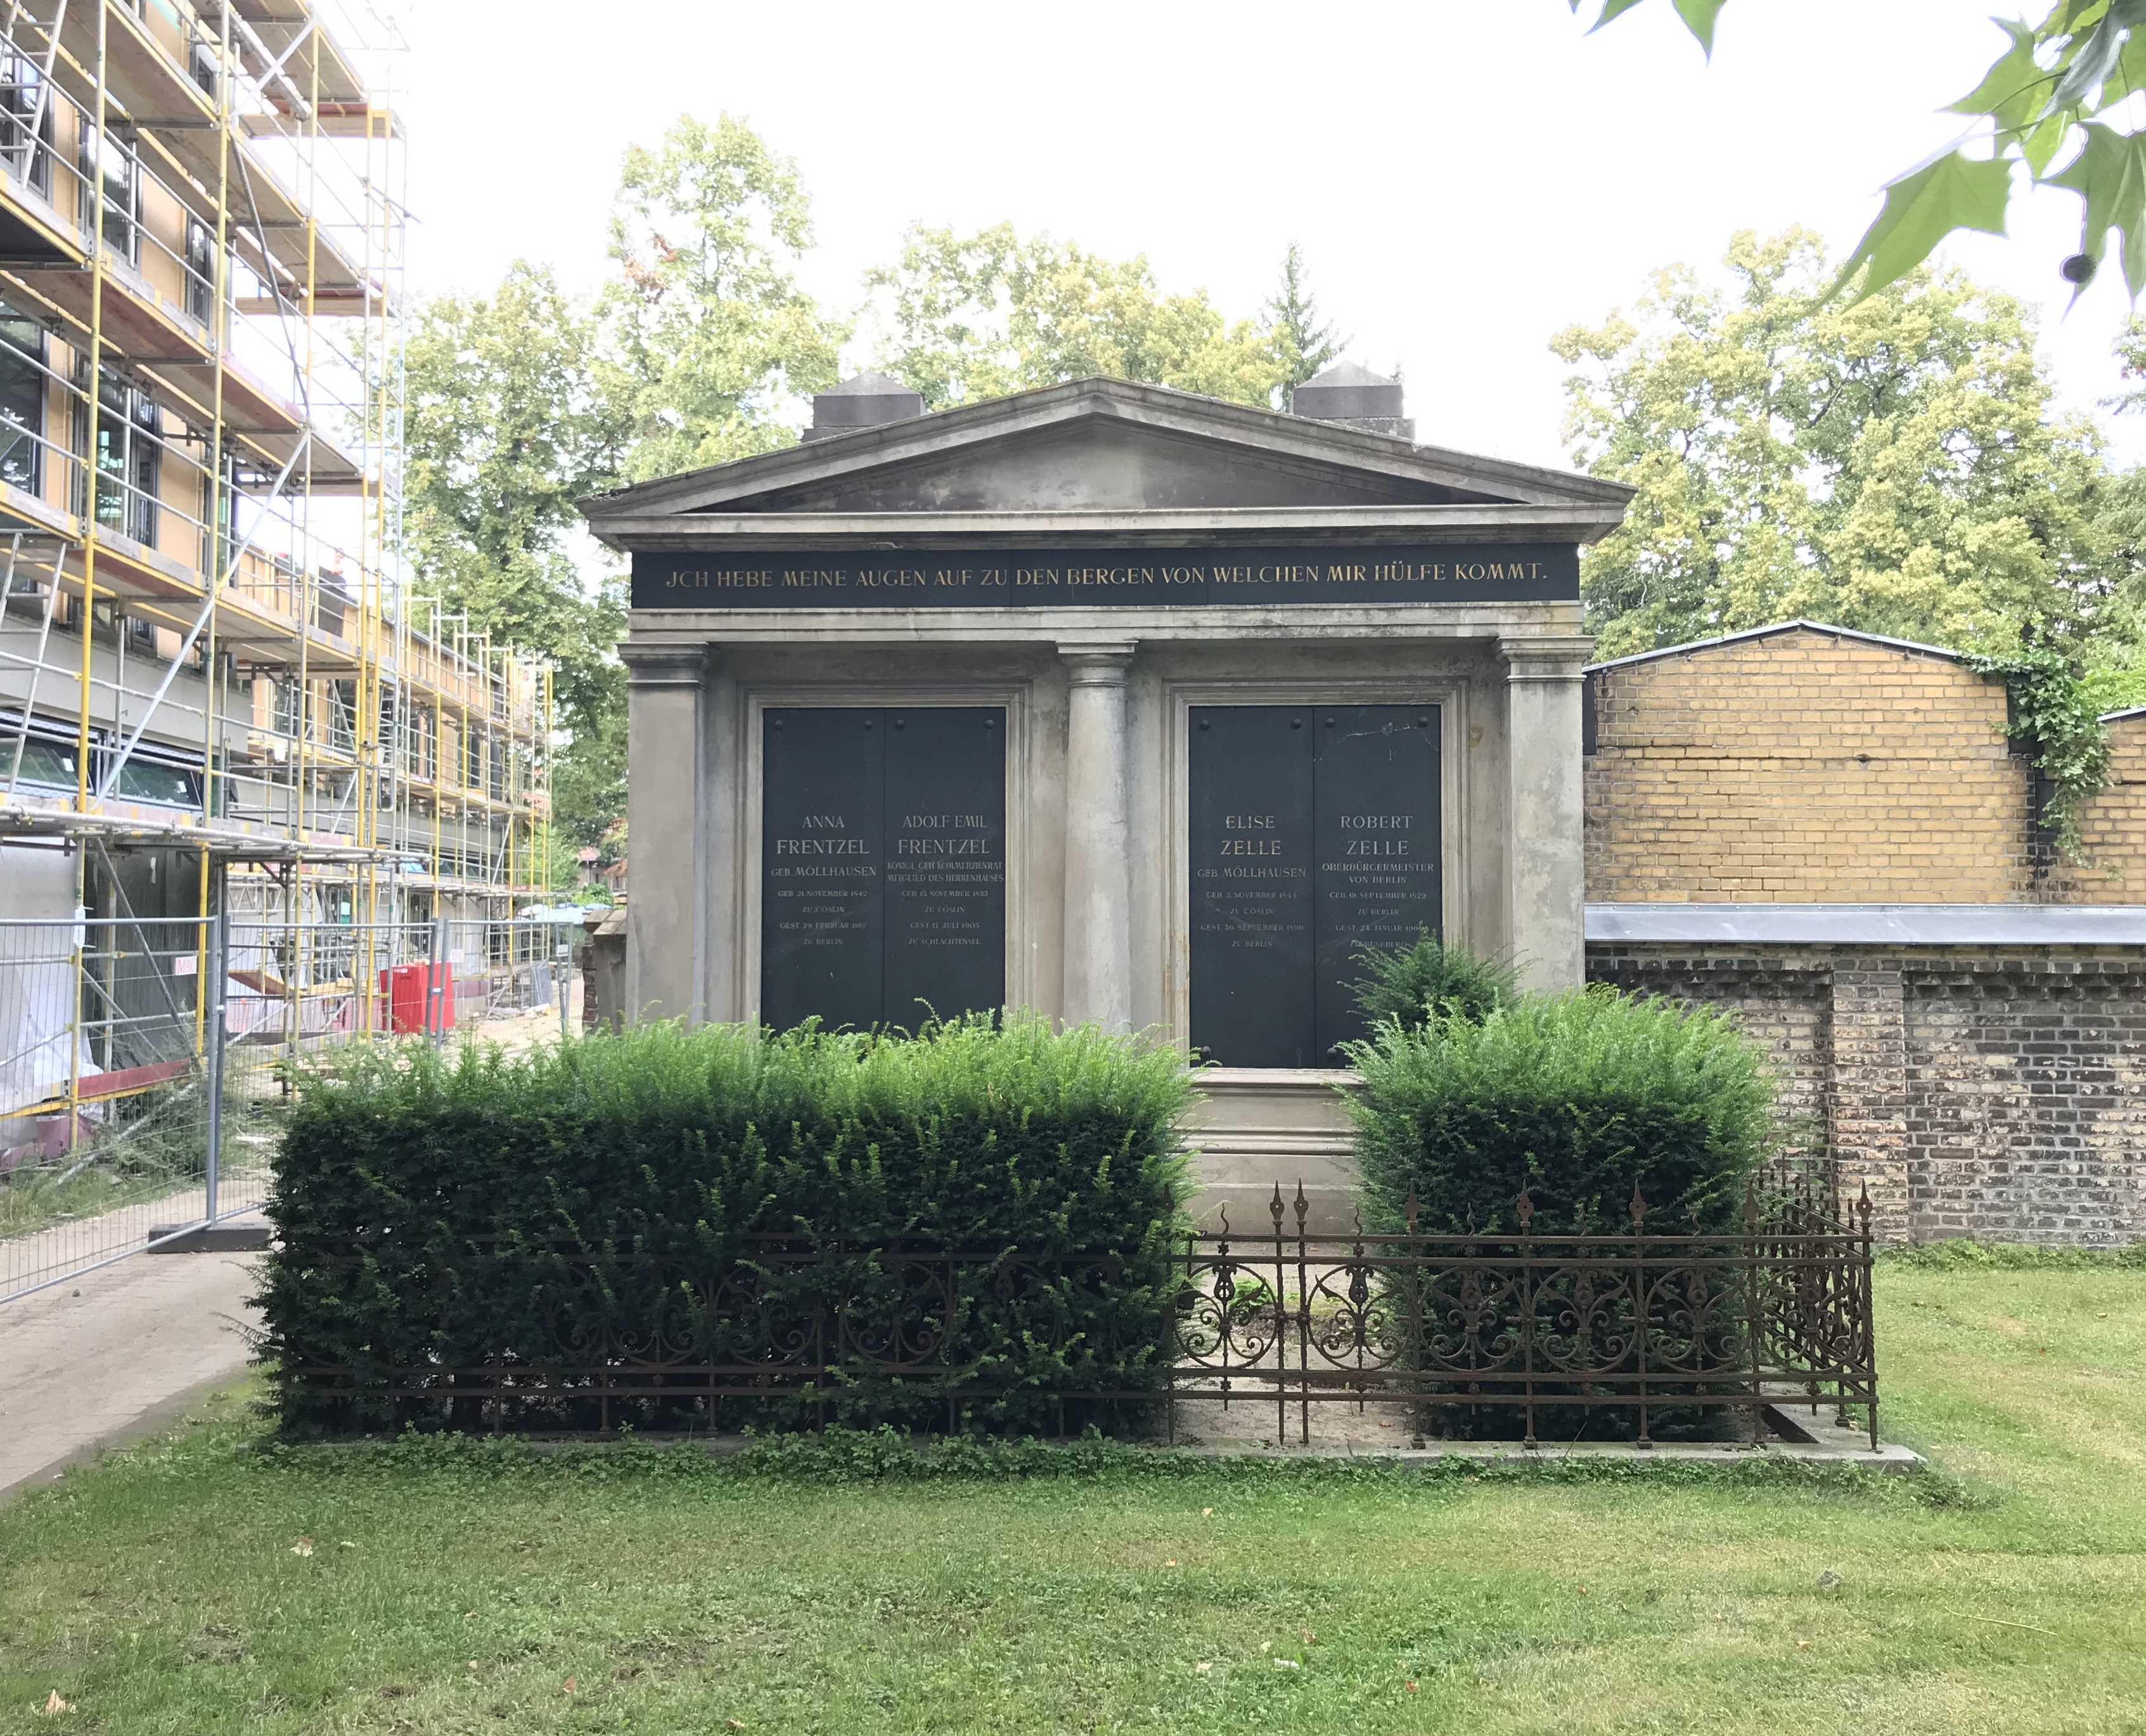 Grabstein Robert Zelle, Friedhof der St. Thomas Gemeine, Berlin-Neukölln